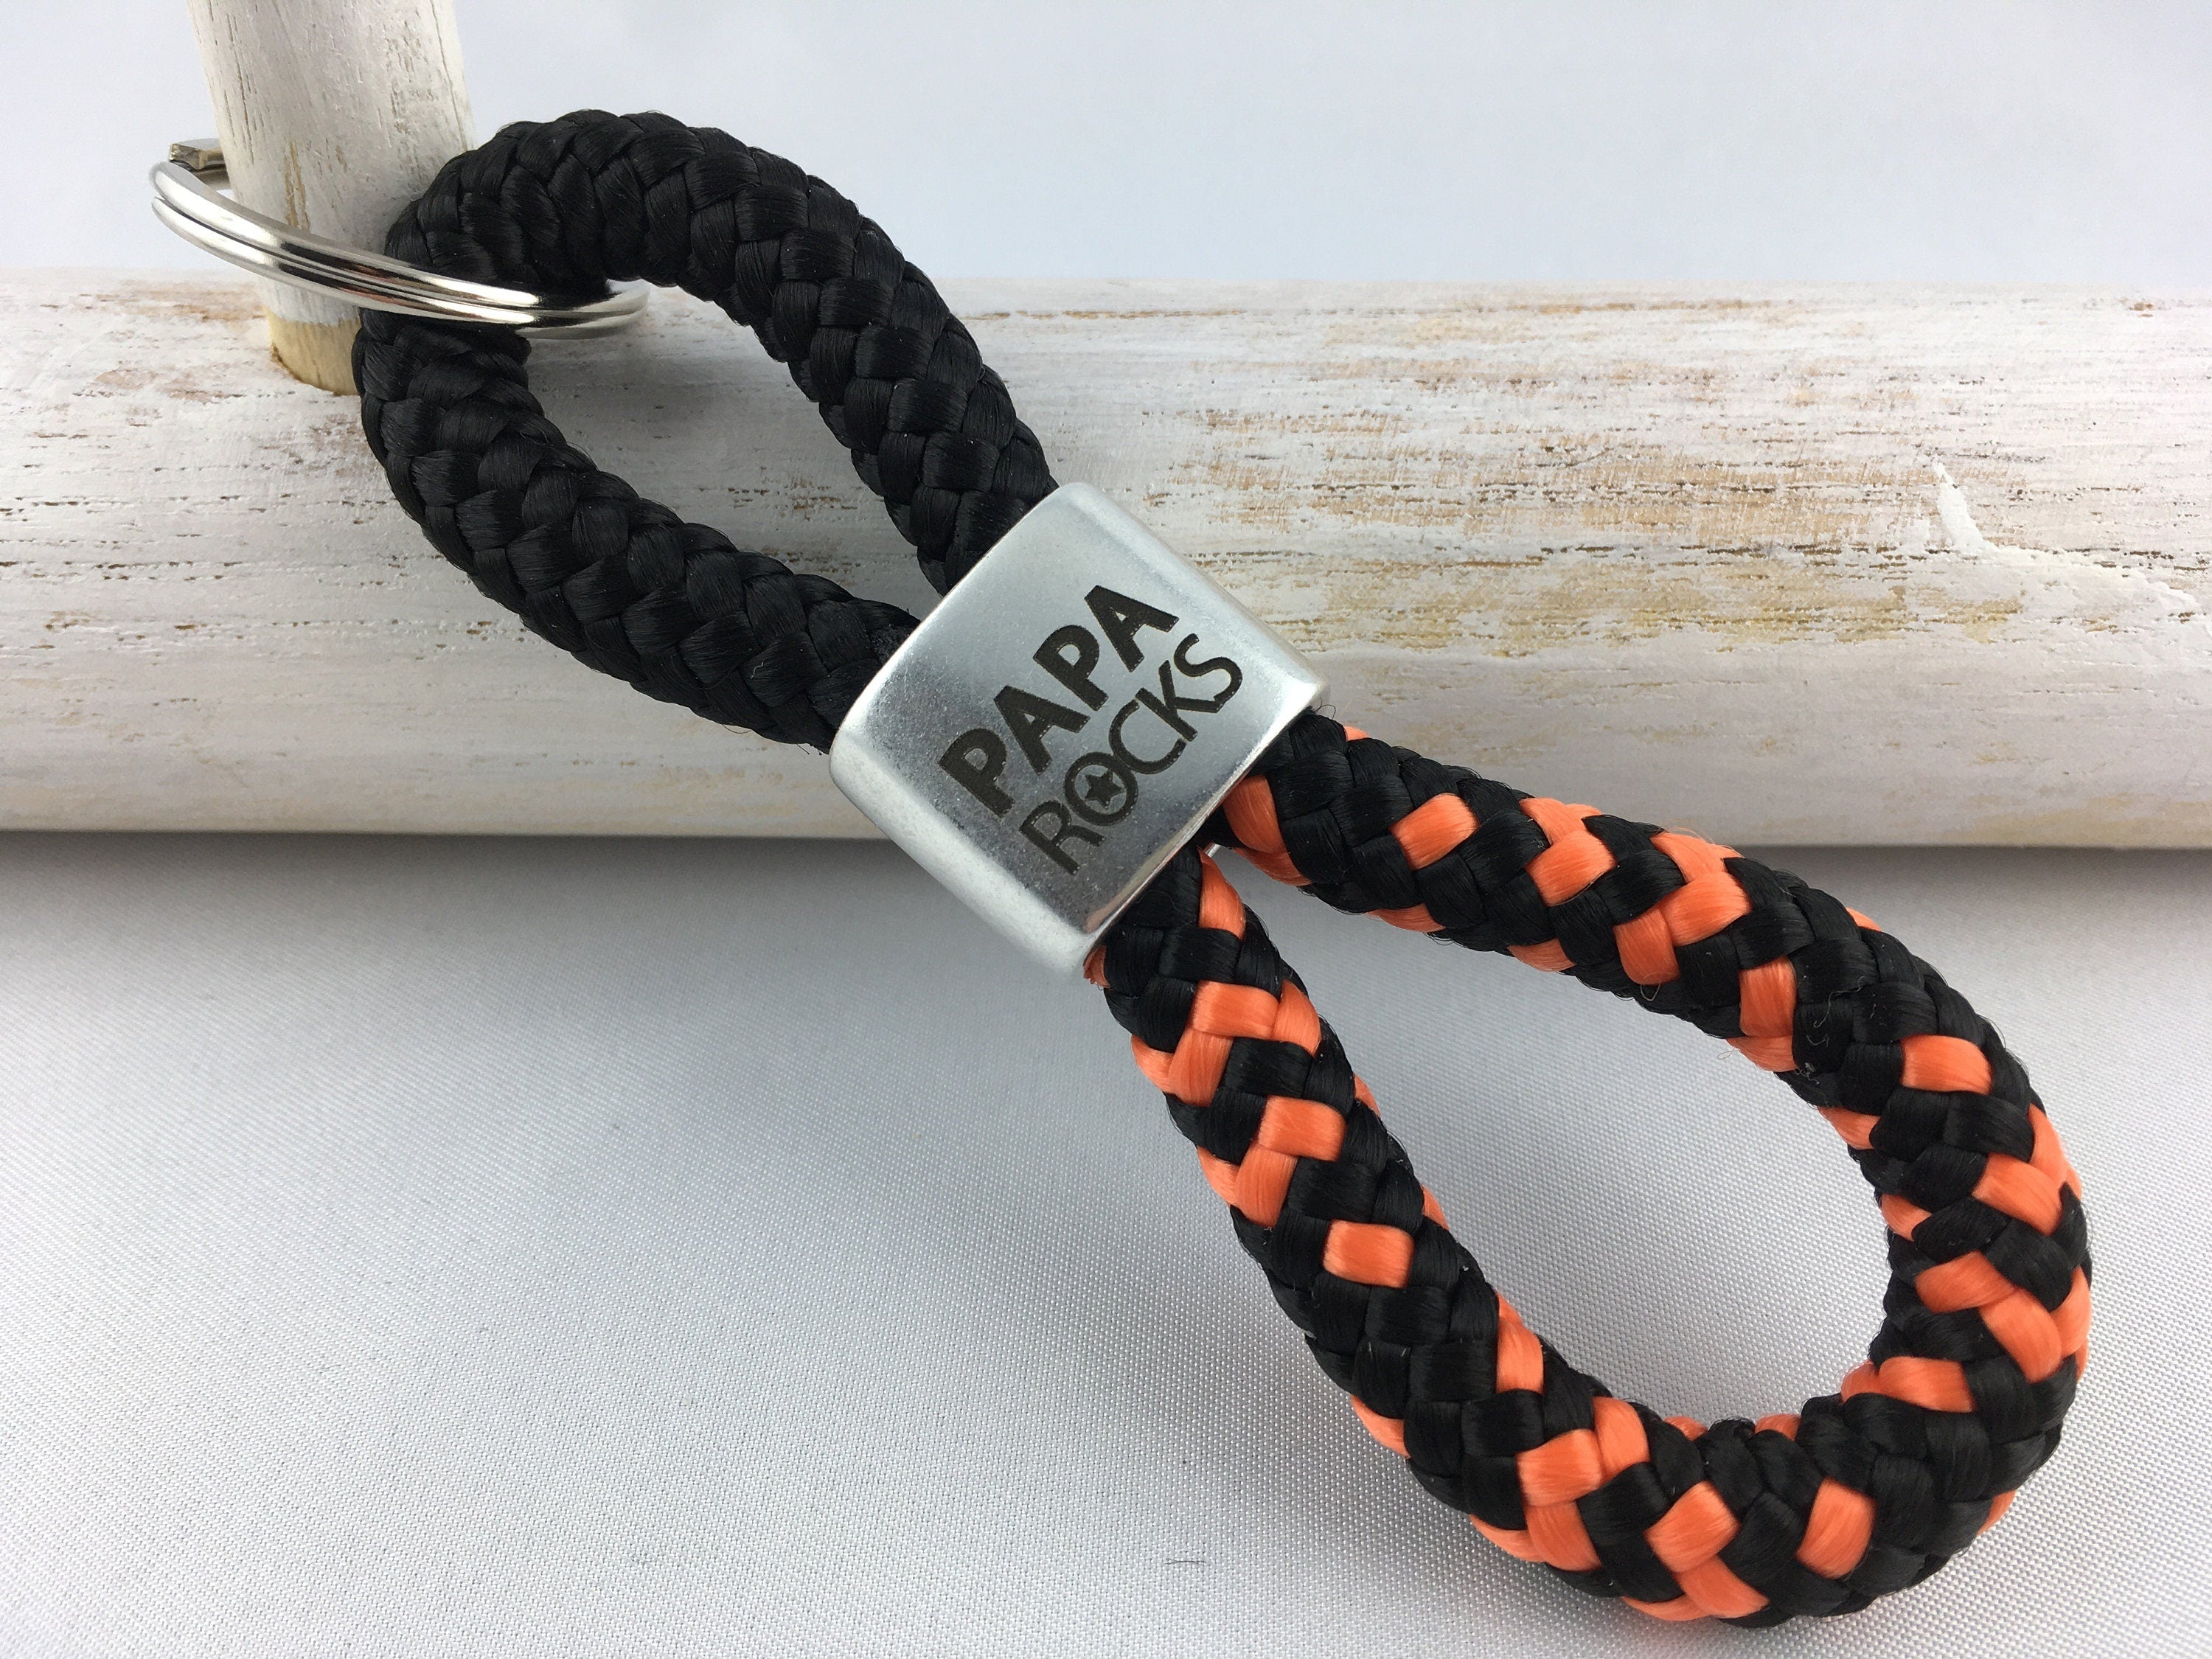 Schlüsselanhänger aus Segelseil mit versilbertem Zwischenstück mit Gravur "PAPA ROCKS", schwarz/ schwarz-orange